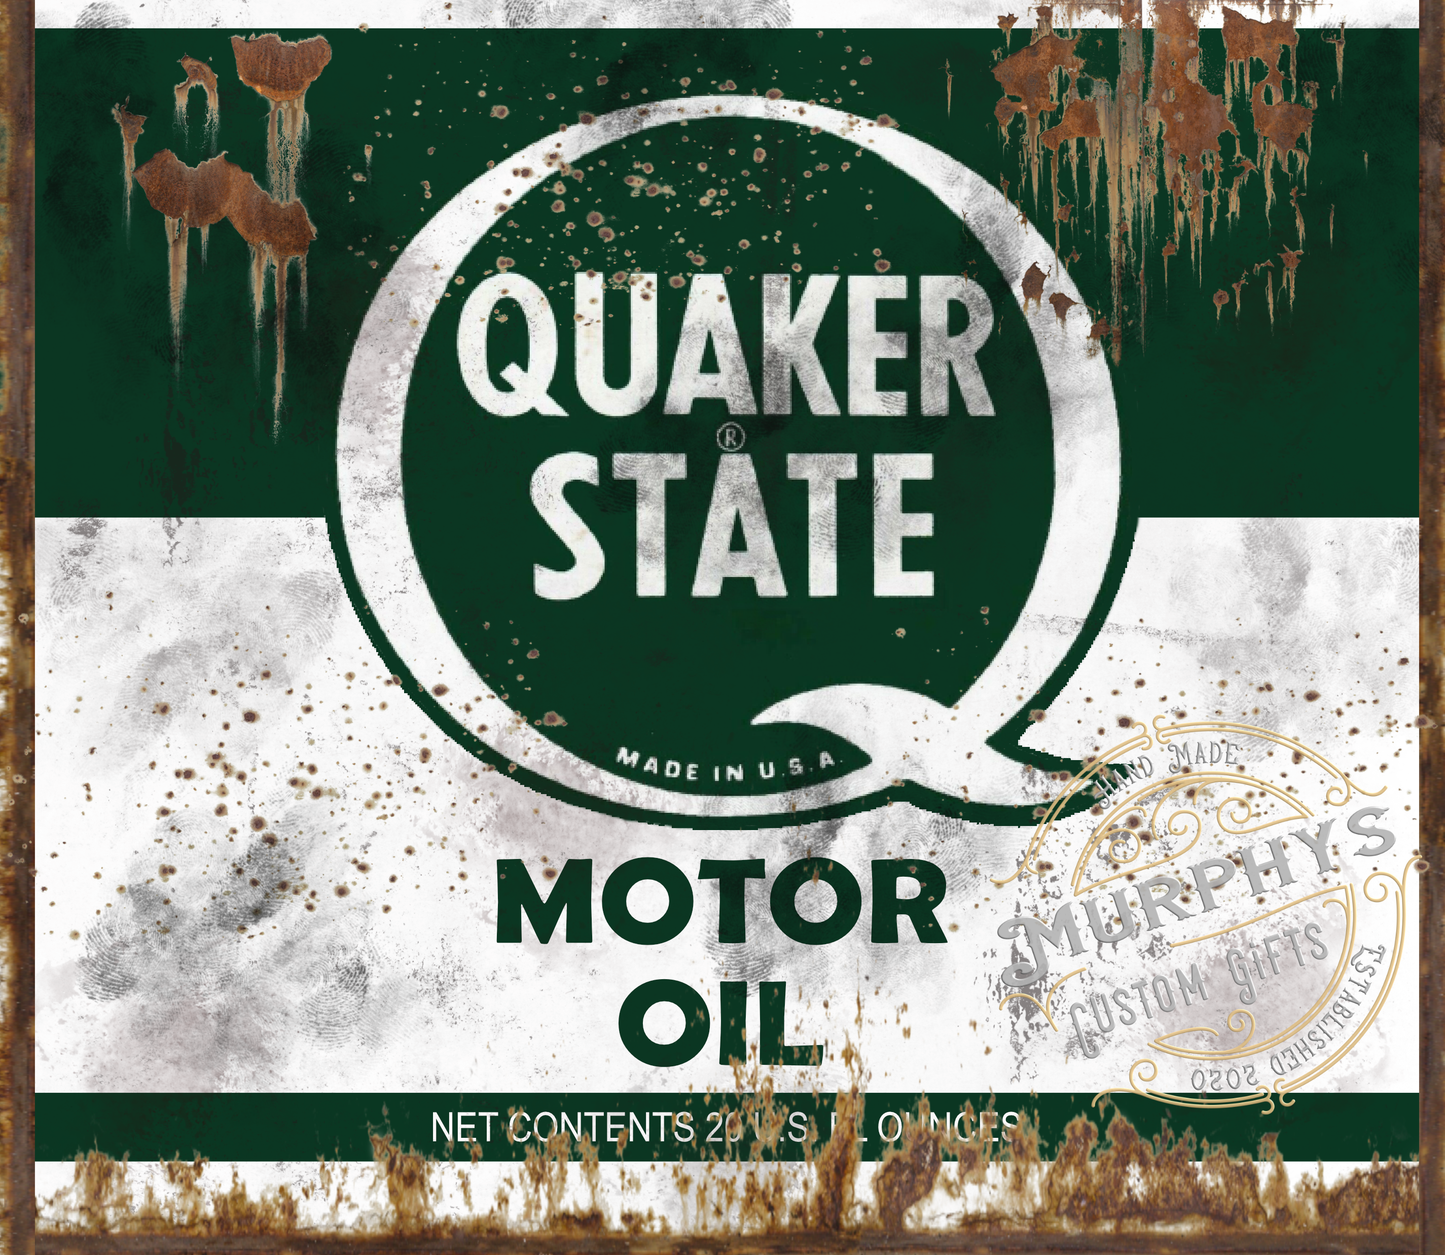 Vintage Quaker State Motor Oil